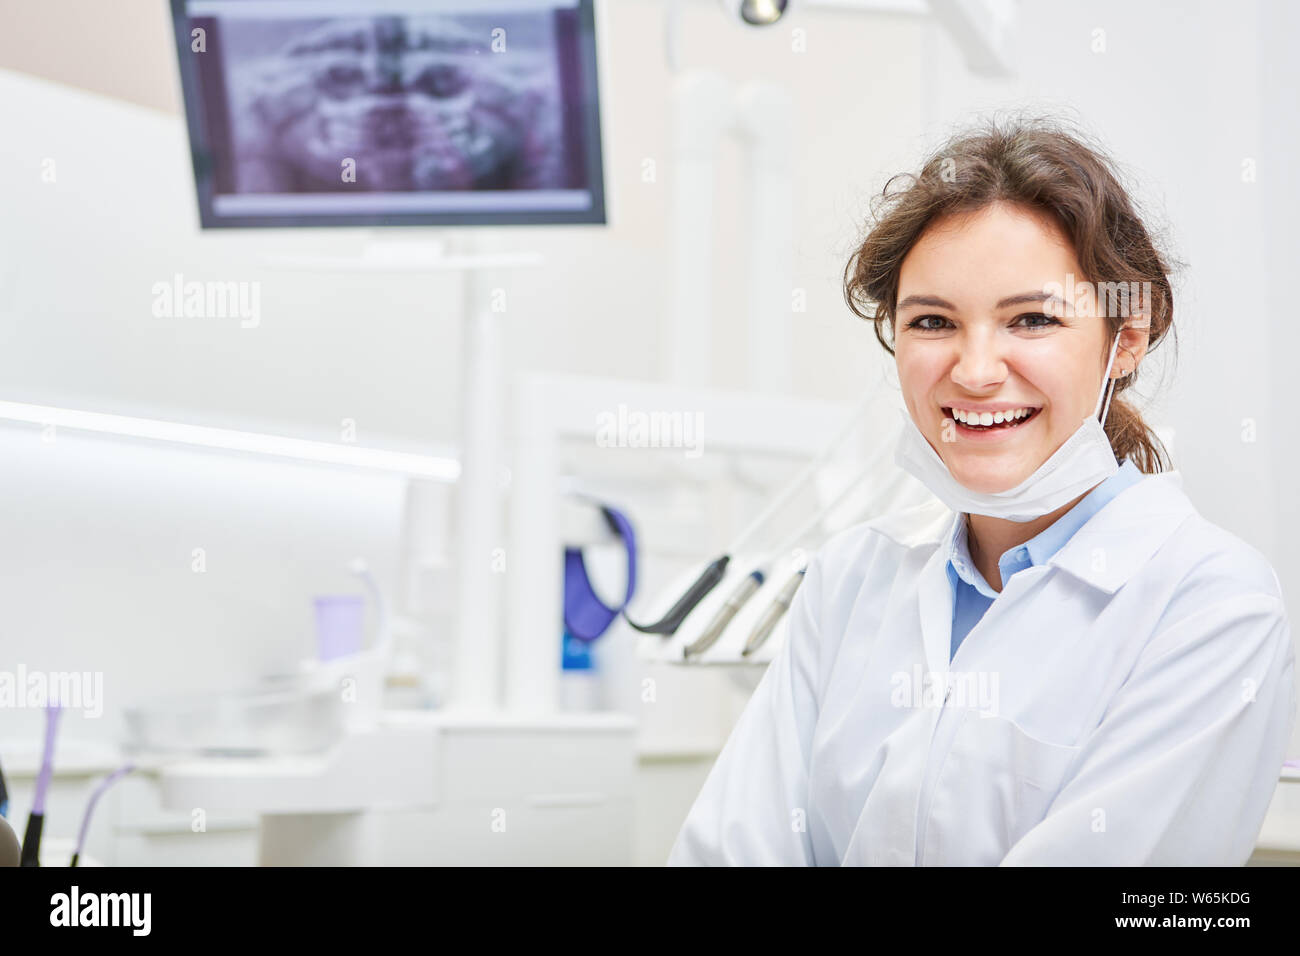 Femme souriante qu'un dentiste ou d'assistante dentaire dans un cabinet dentaire Banque D'Images